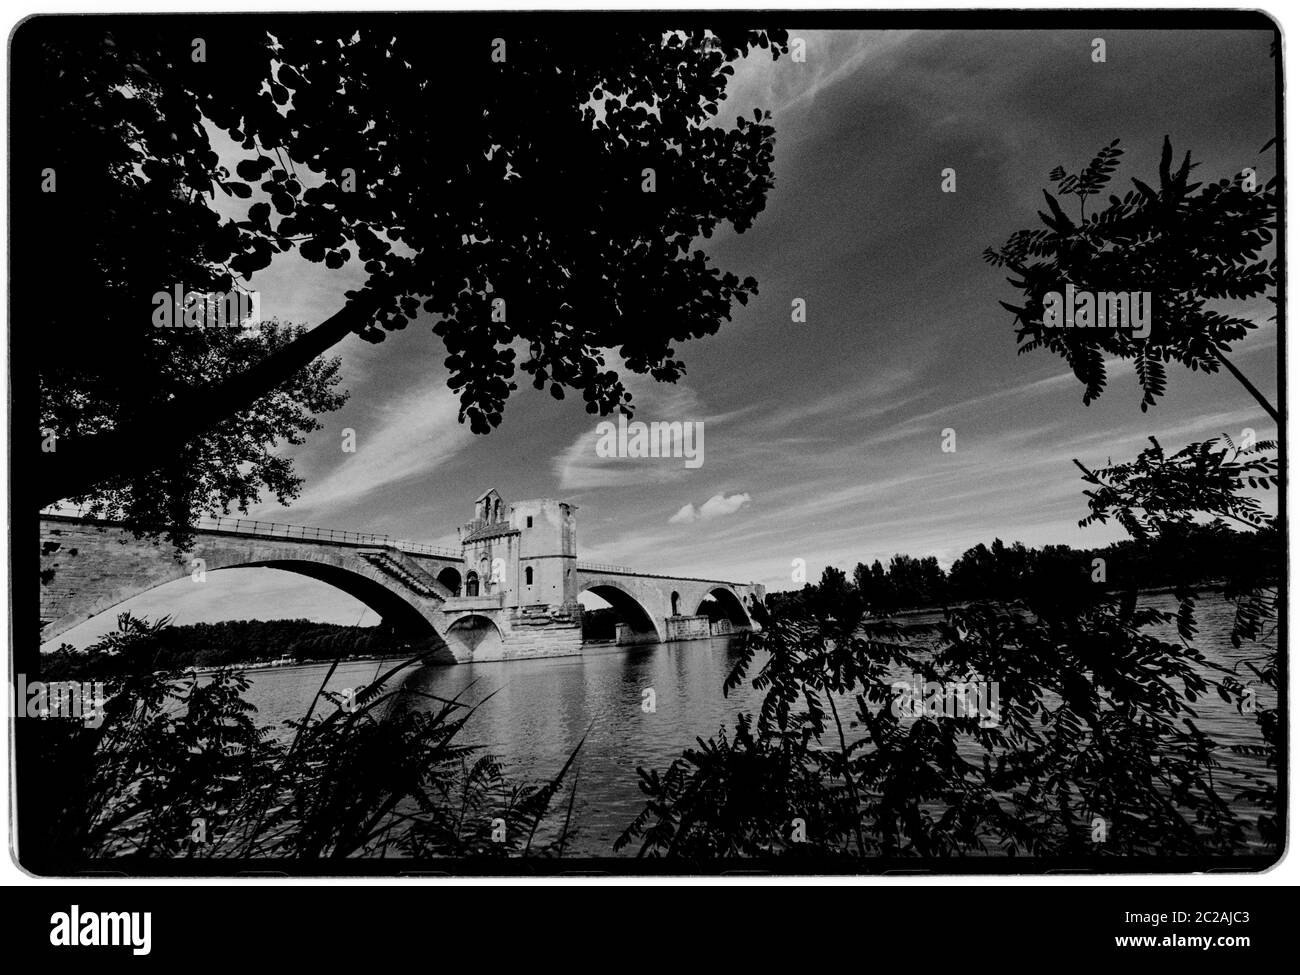 Puente de Aviñón. El Pont Saint-Bénézet, Pont d'Avignon, 1988 Wikipeadia: El Pont Saint-Bénézet, también conocido como el Pont d'Avignon, es un famoso puente medieval en la ciudad de Avignon, en el sur de Francia. Entre 1177 y 1185 se construyó un puente de madera que abarca el Ródano entre Villeneuve-lès-Avignon y Avignon. Este puente fue destruido cuarenta años más tarde en 1226 durante la cruzada albigense cuando Luis VIII de Francia sitió a Aviñón. A partir de 1234 el puente fue reconstruido con 22 arcos de piedra. El puente de piedra tenía una longitud de 900 m (980 yd) y sólo 4.9 m (16 pies) de ancho Foto de stock